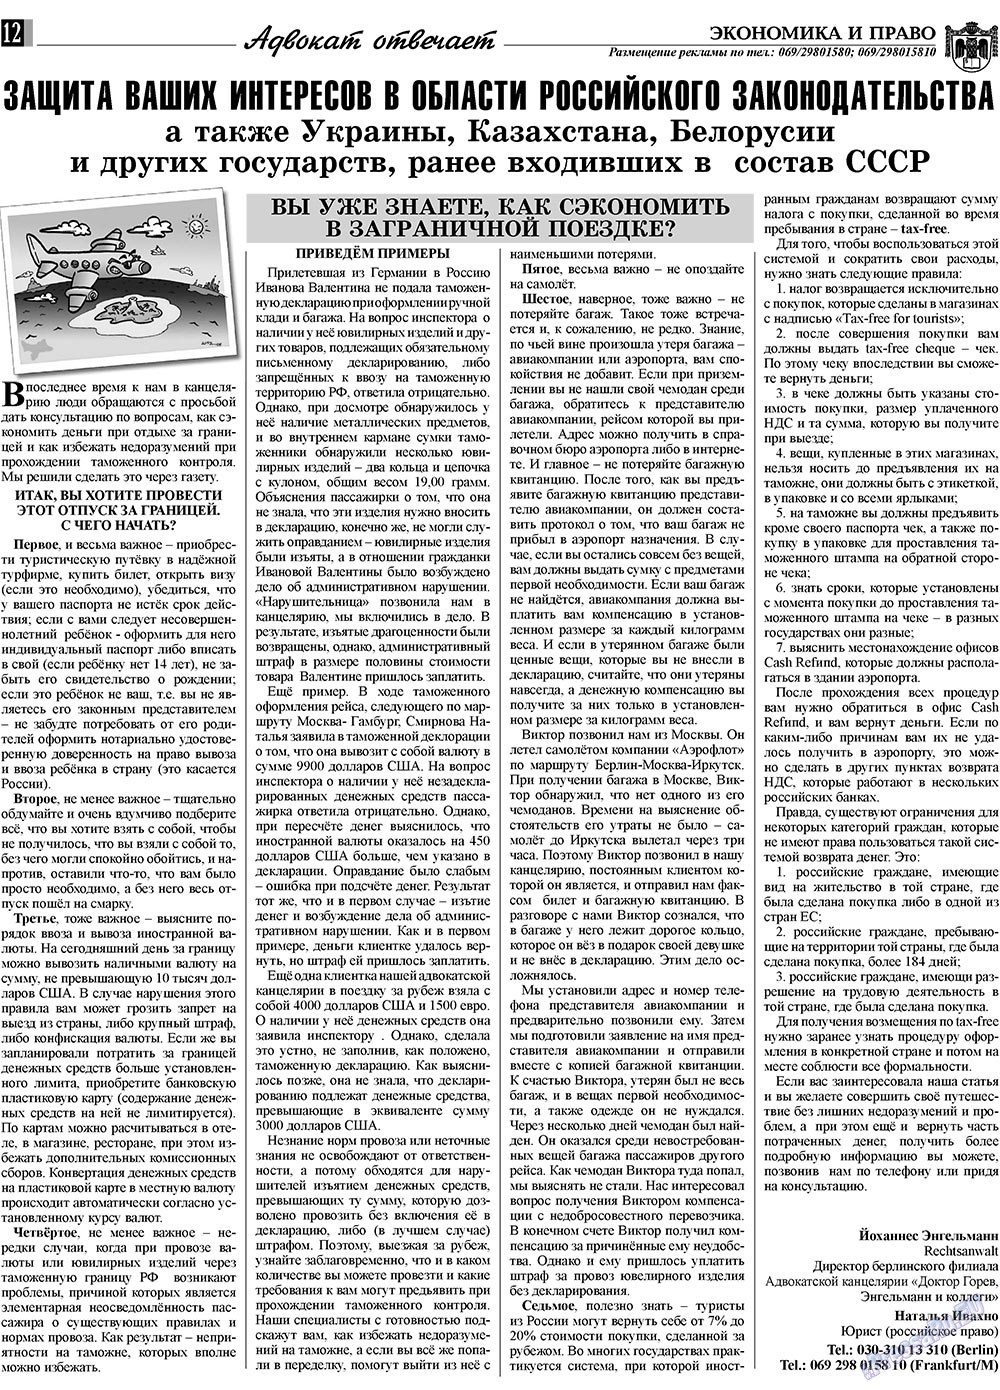 Экономика и право, газета. 2009 №9 стр.12